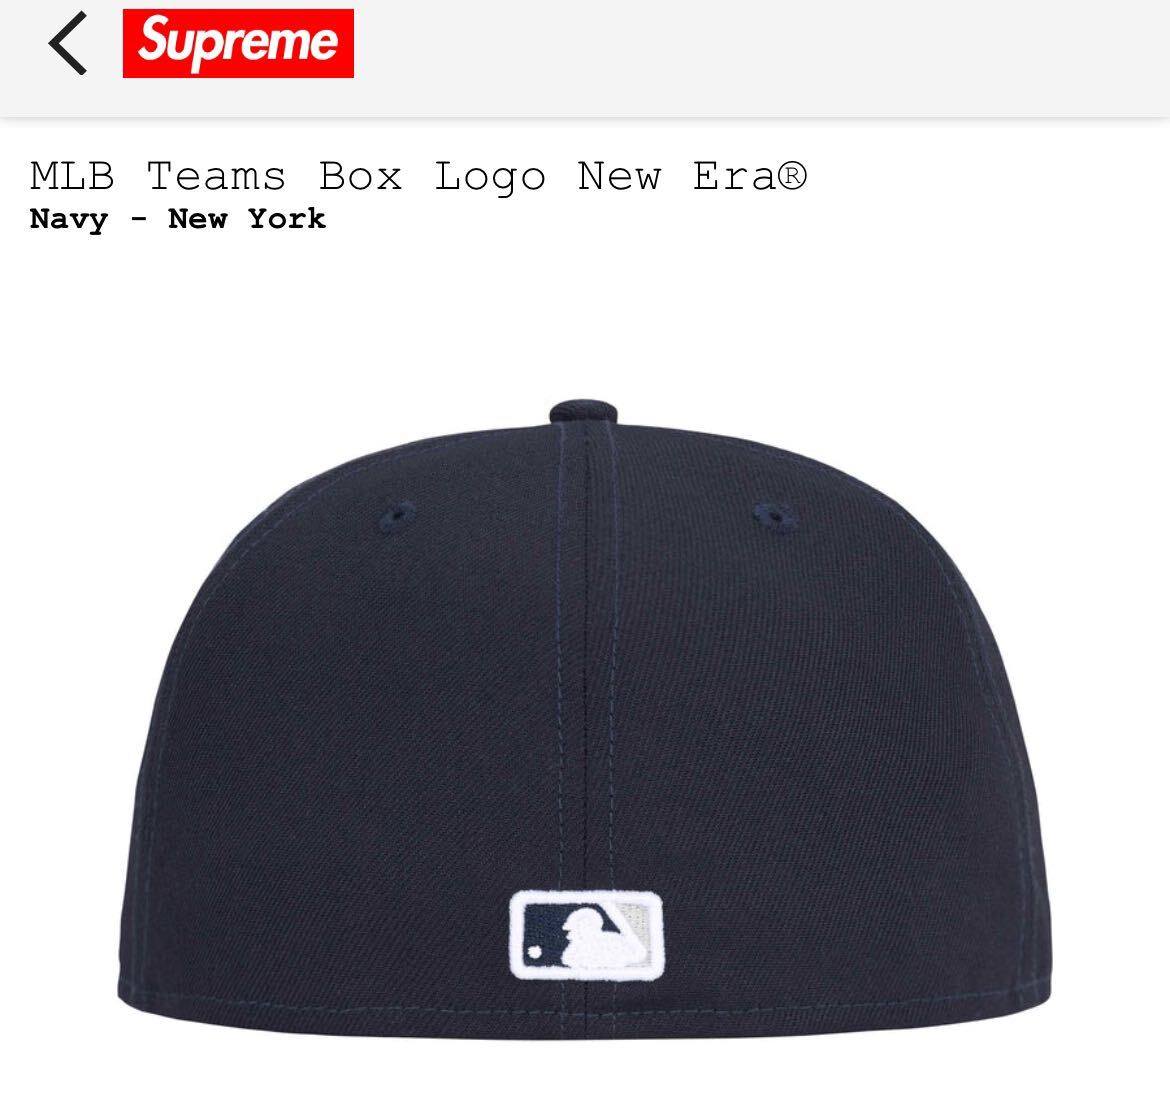 【新品】supreme MLB Teams Box Logo New Era New York Yankees 7 5/8 の60.6cm NAVY シュプリーム ニューエラ ヤンキース ネイビー_画像2